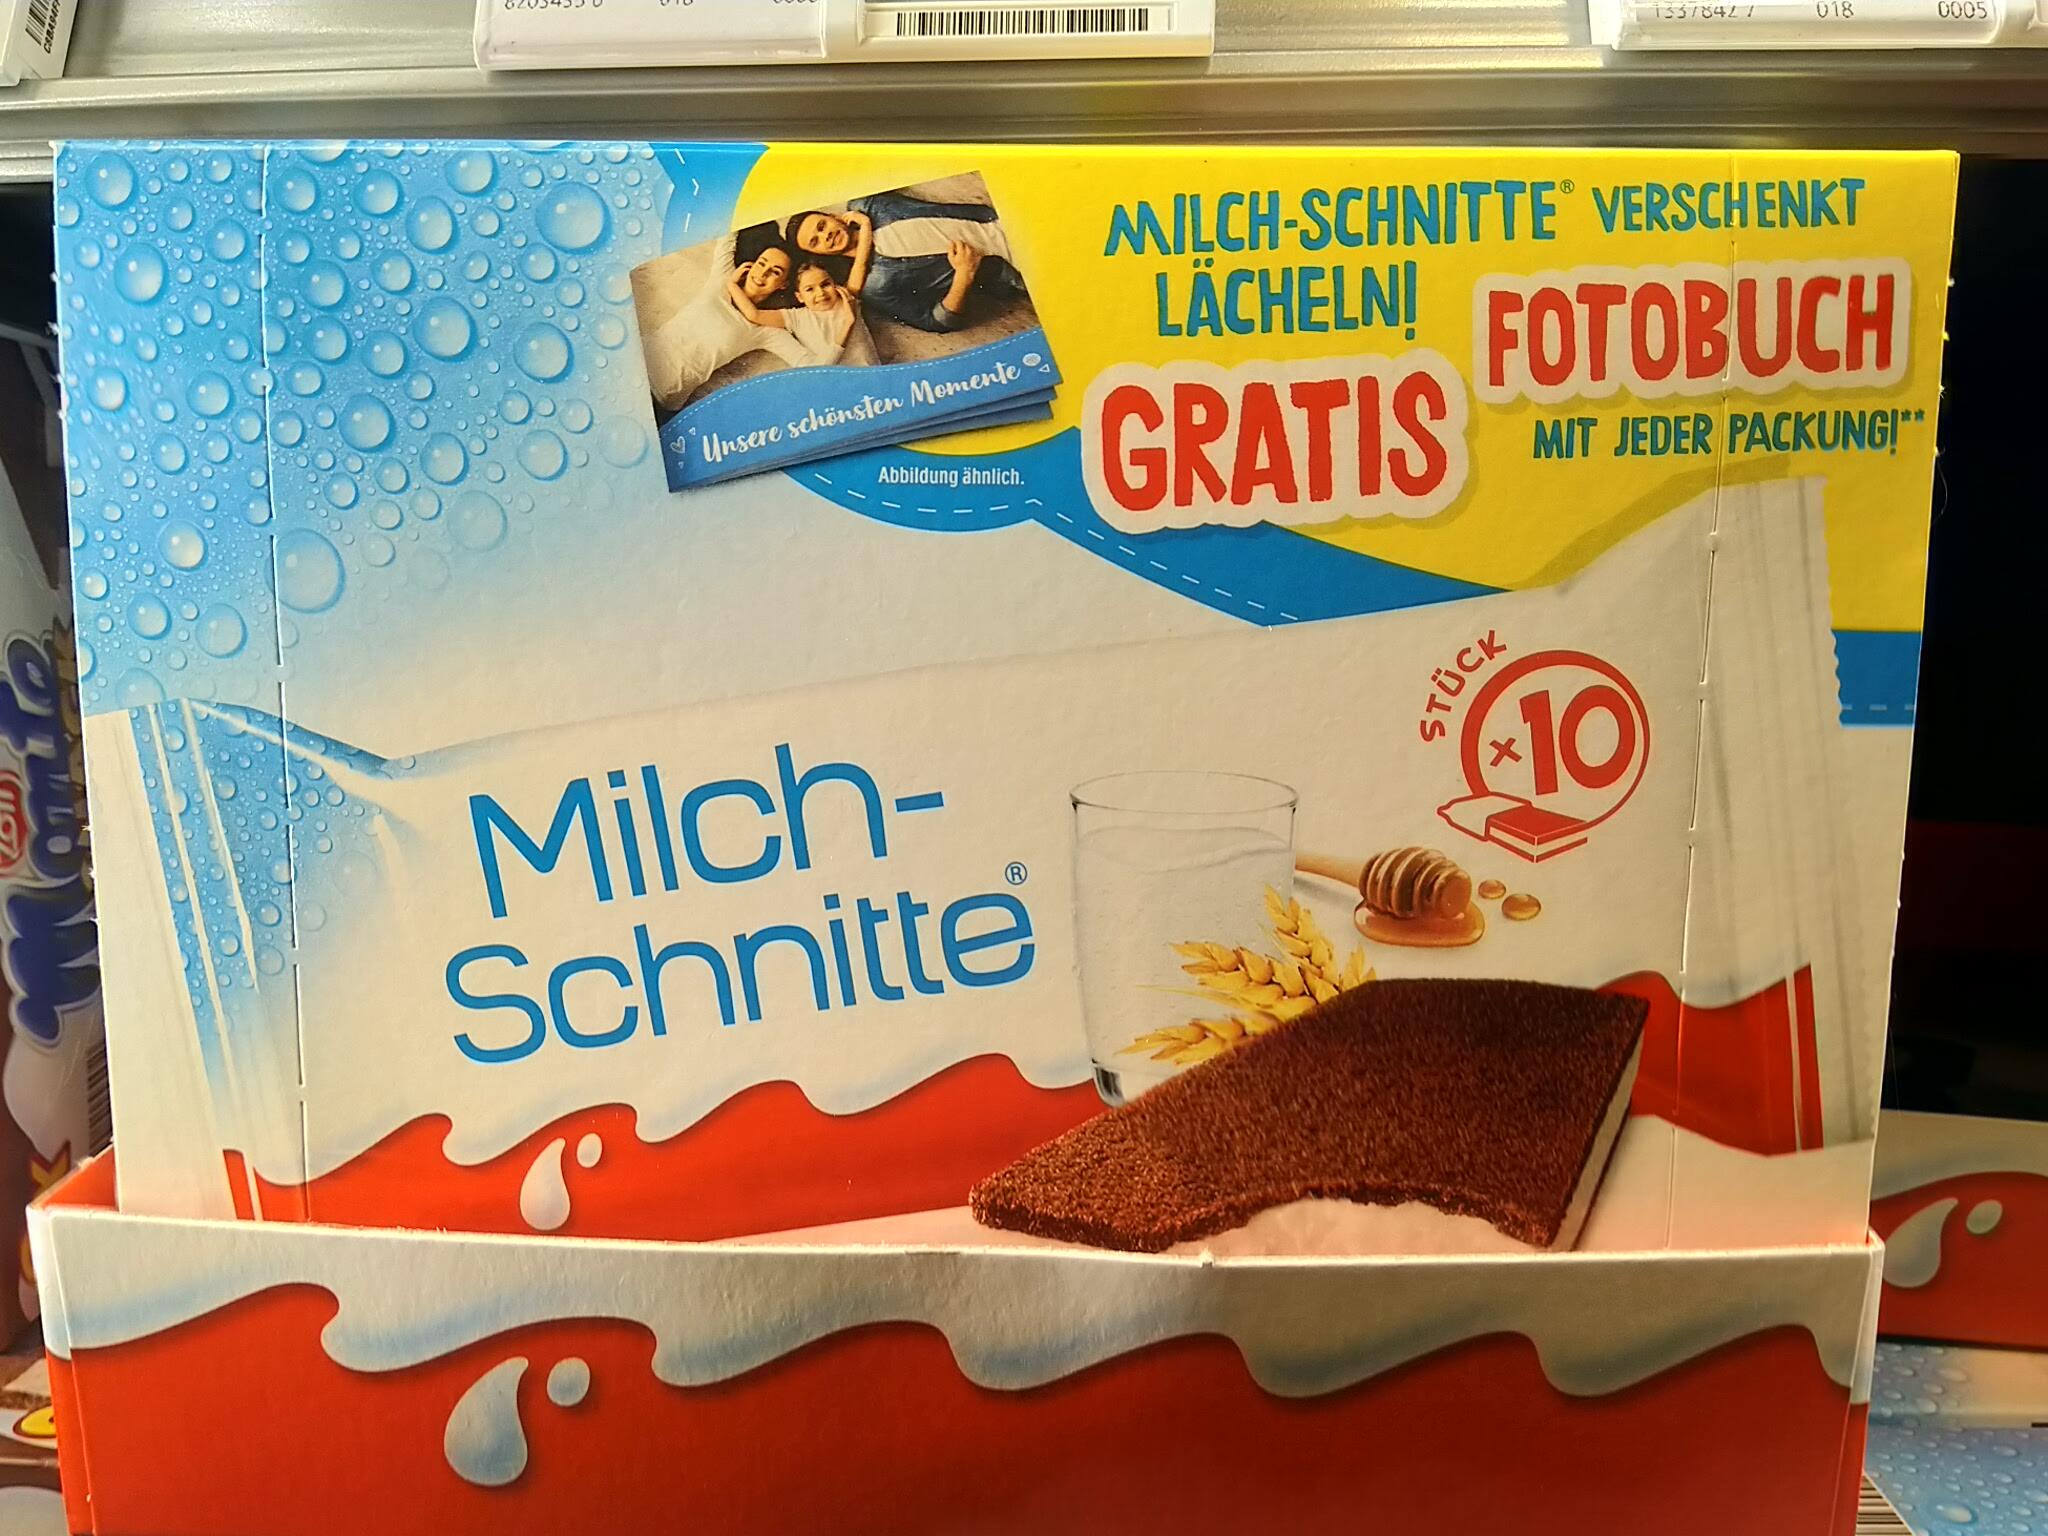 Milch-Schnitte Fotobuch gratis